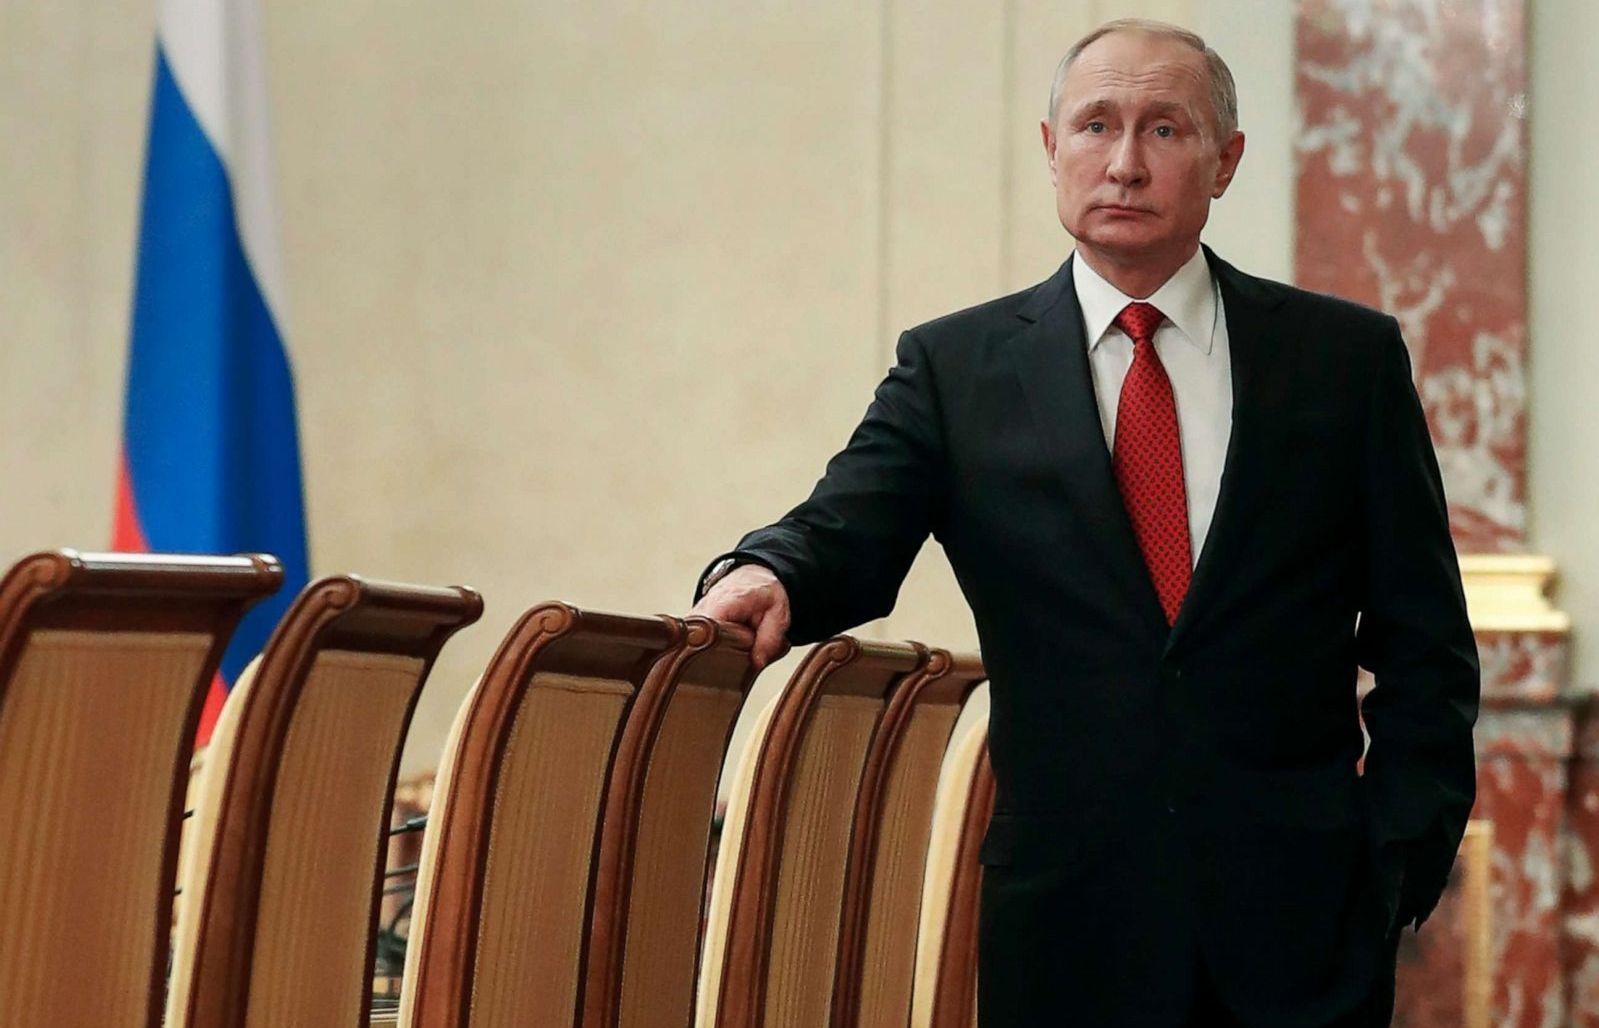 Cải tổ từ 'chóp bu', Tổng thống Putin đang suy tính những gì?